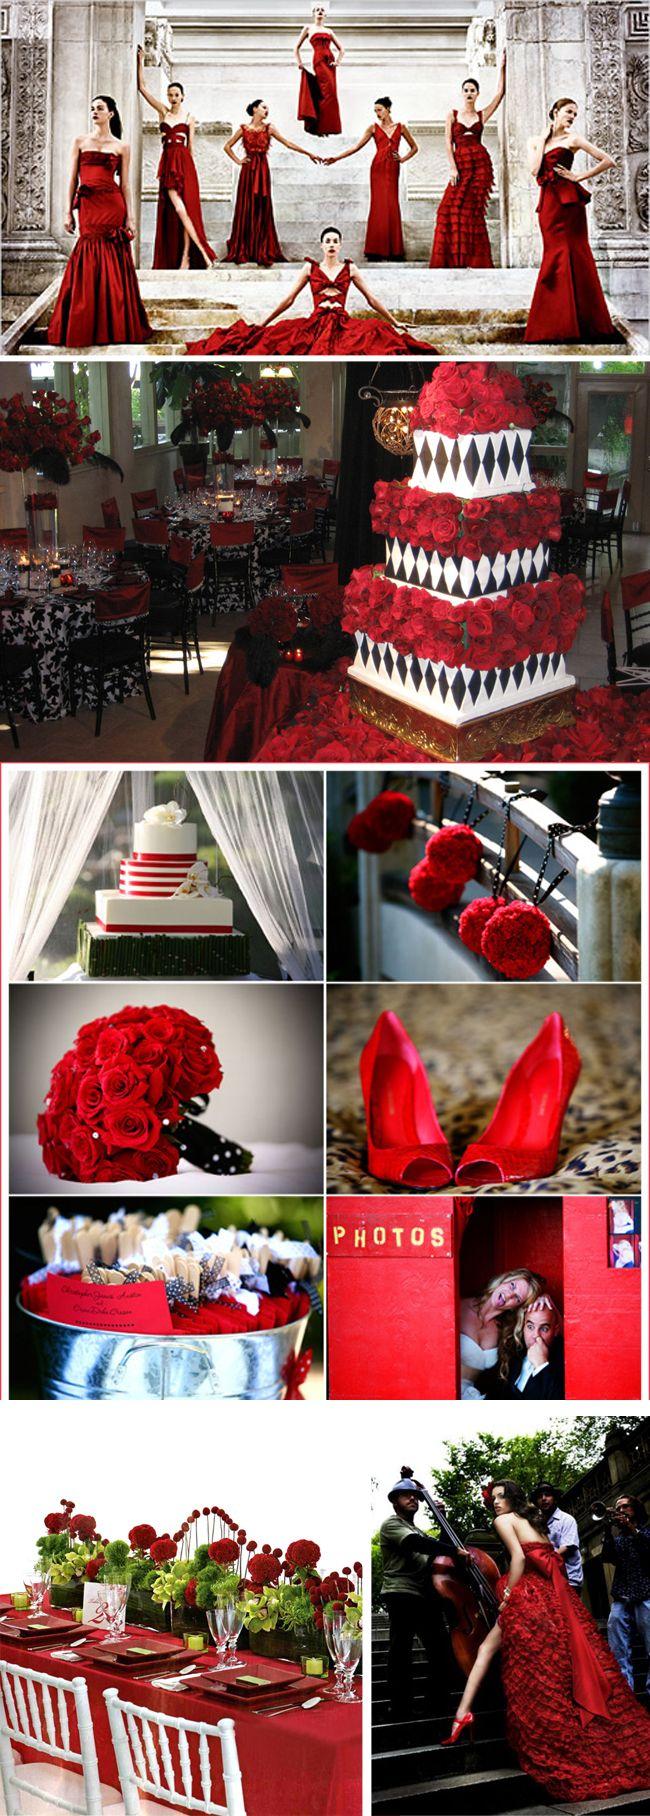 زفاف - أحمر الزفاف الإلهام.